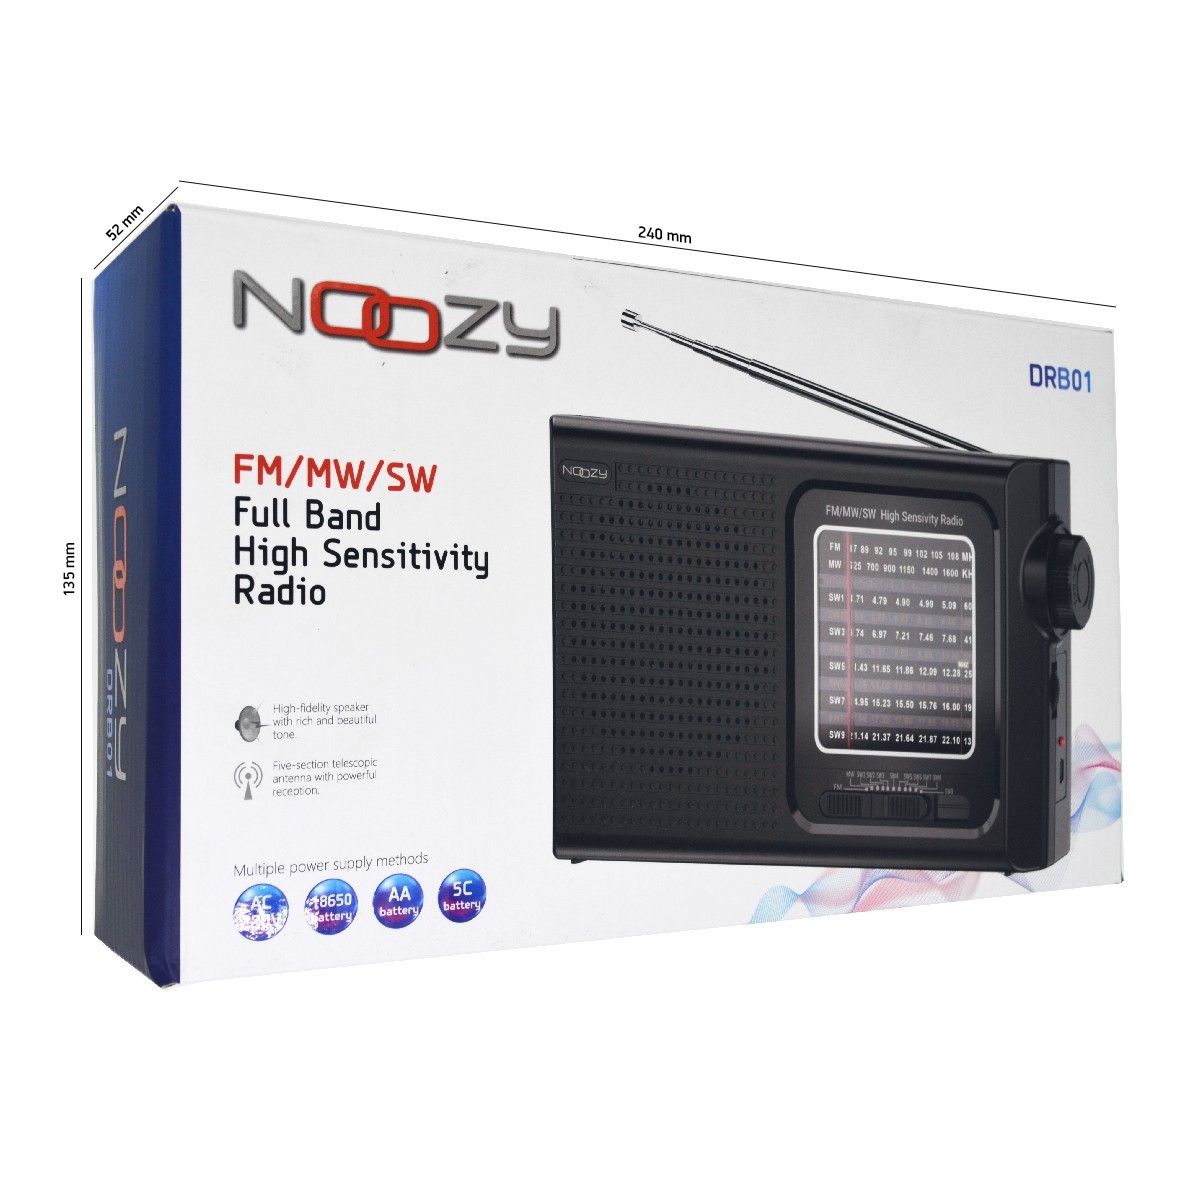 Φορητό Ραδιόφωνο Noozy DRB01 FM/MW/SW Λειτουργεί με Τροφοδοσία Ρεύματος  ή Μπαταρία Υποστηρίζει Φόρτιση Μπαταριών